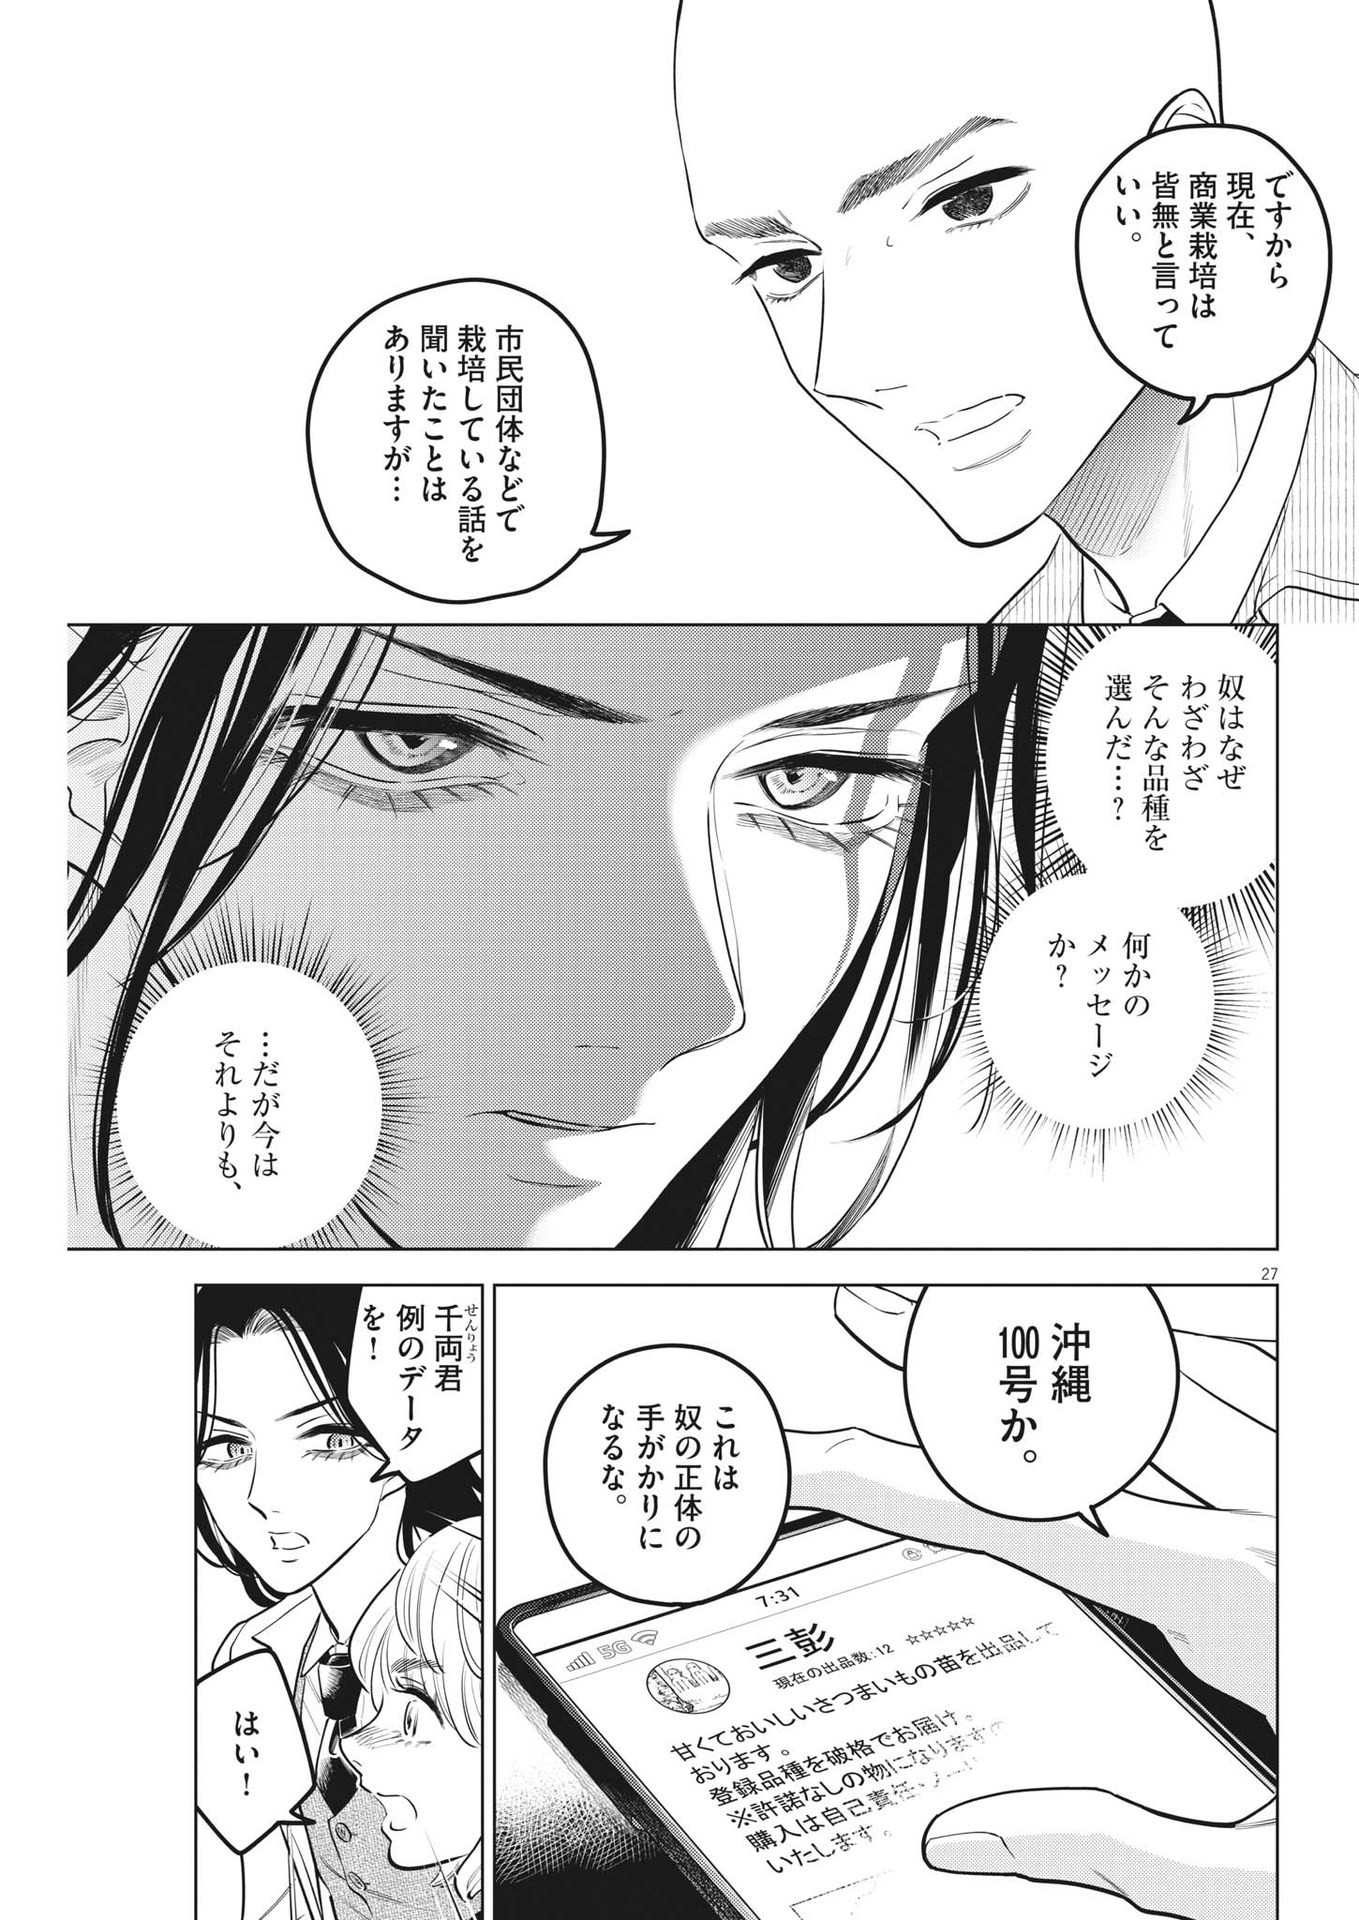 Shokubutsu Byourigaku wa Ashita no Kimi o Negau - Chapter 18 - Page 27